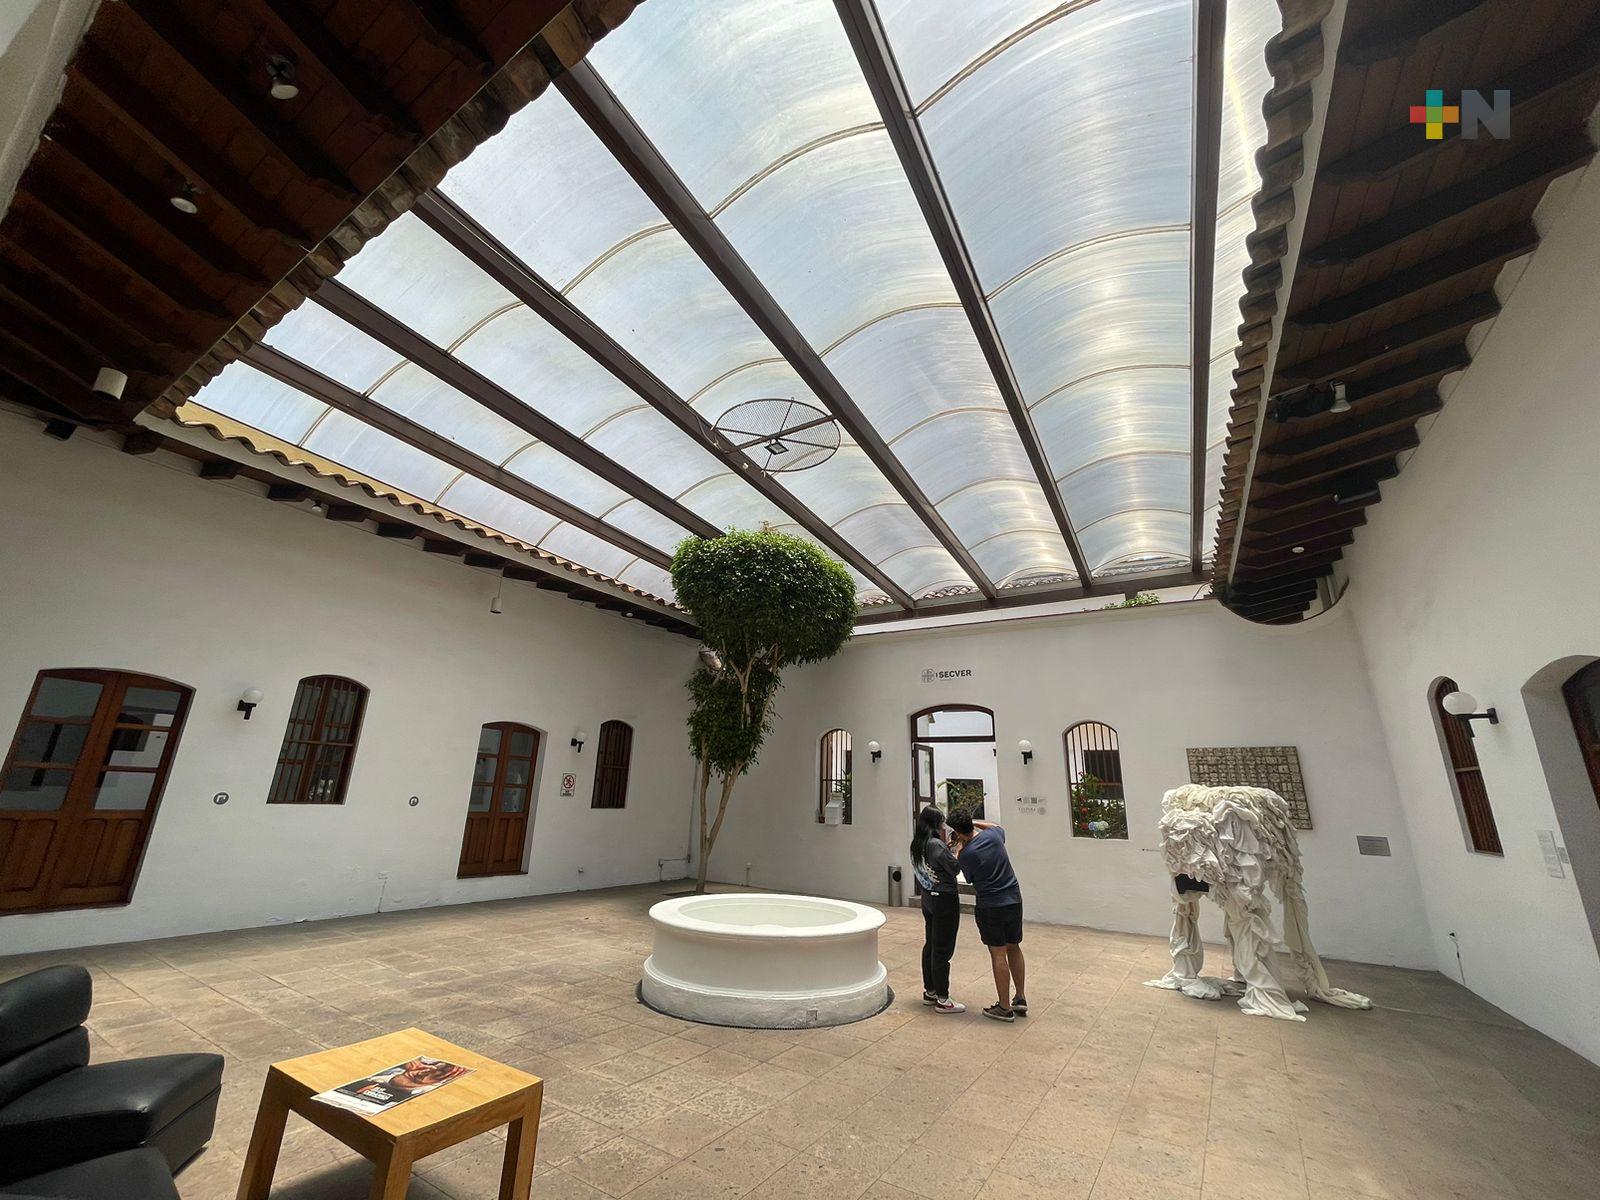 Visitar la Galería de Arte Contemporáneo de Xalapa, una excelente opción